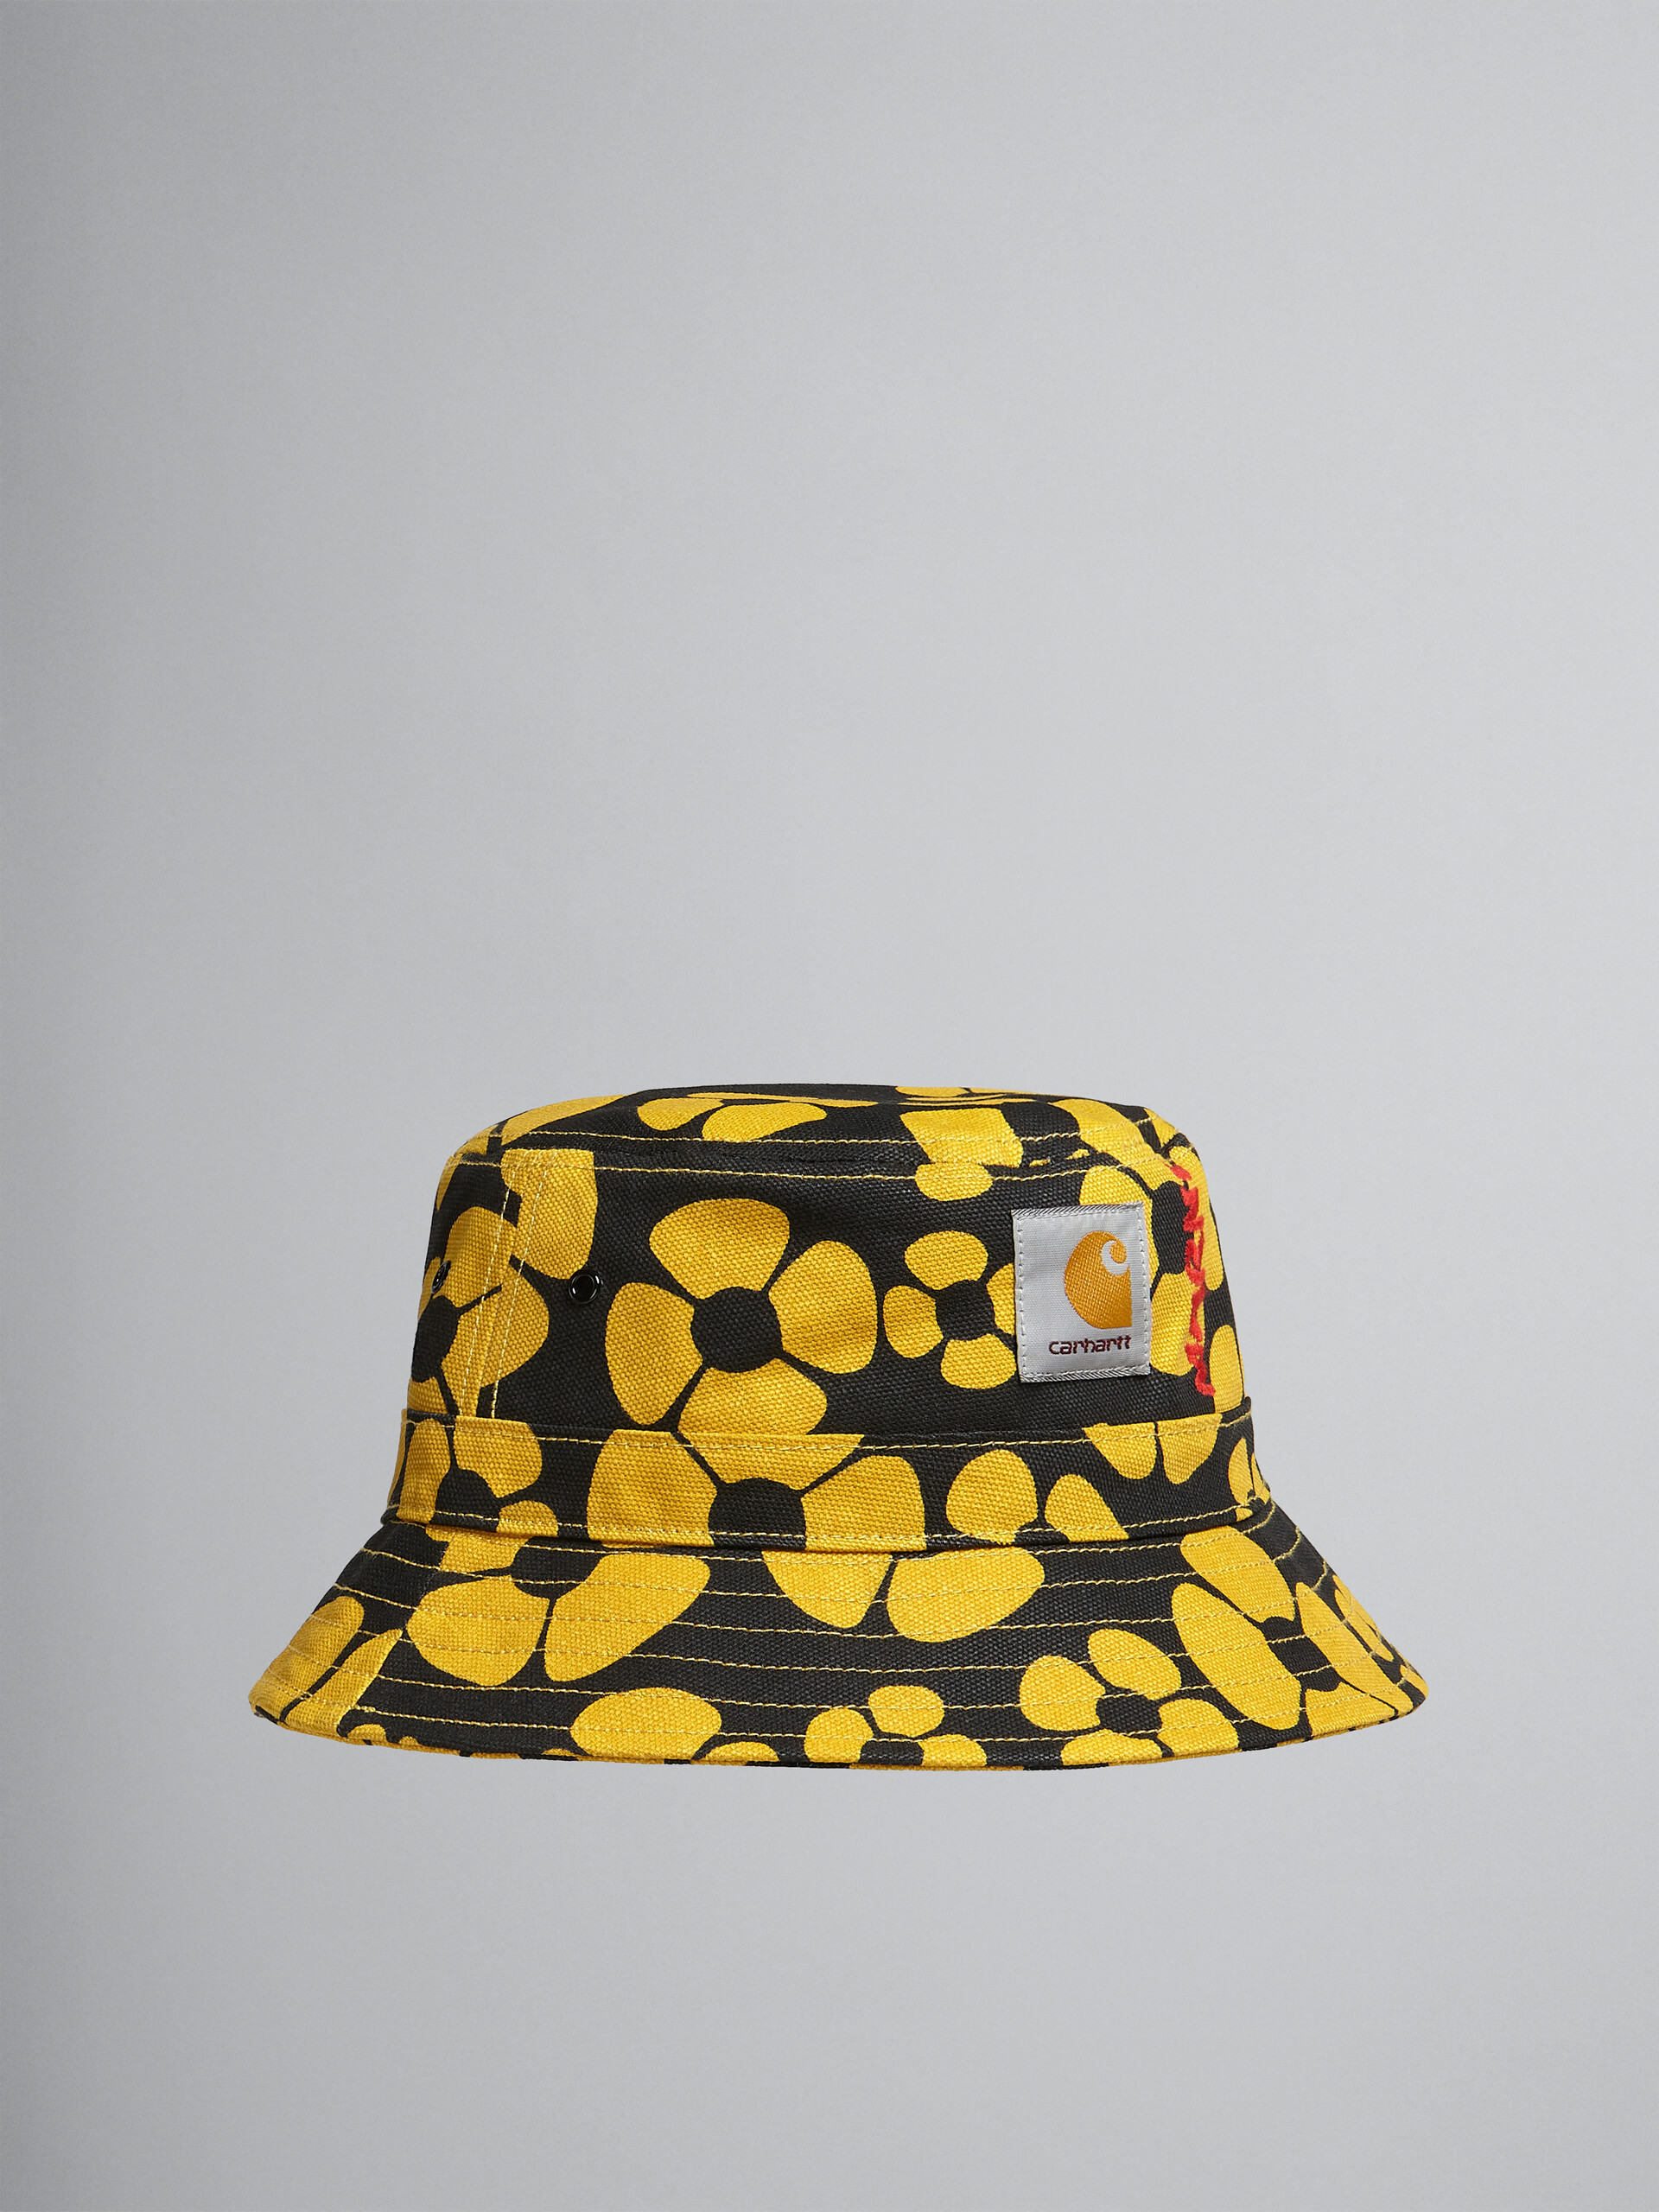 MARNI x CARHARTT WIP - yellow bucket hat